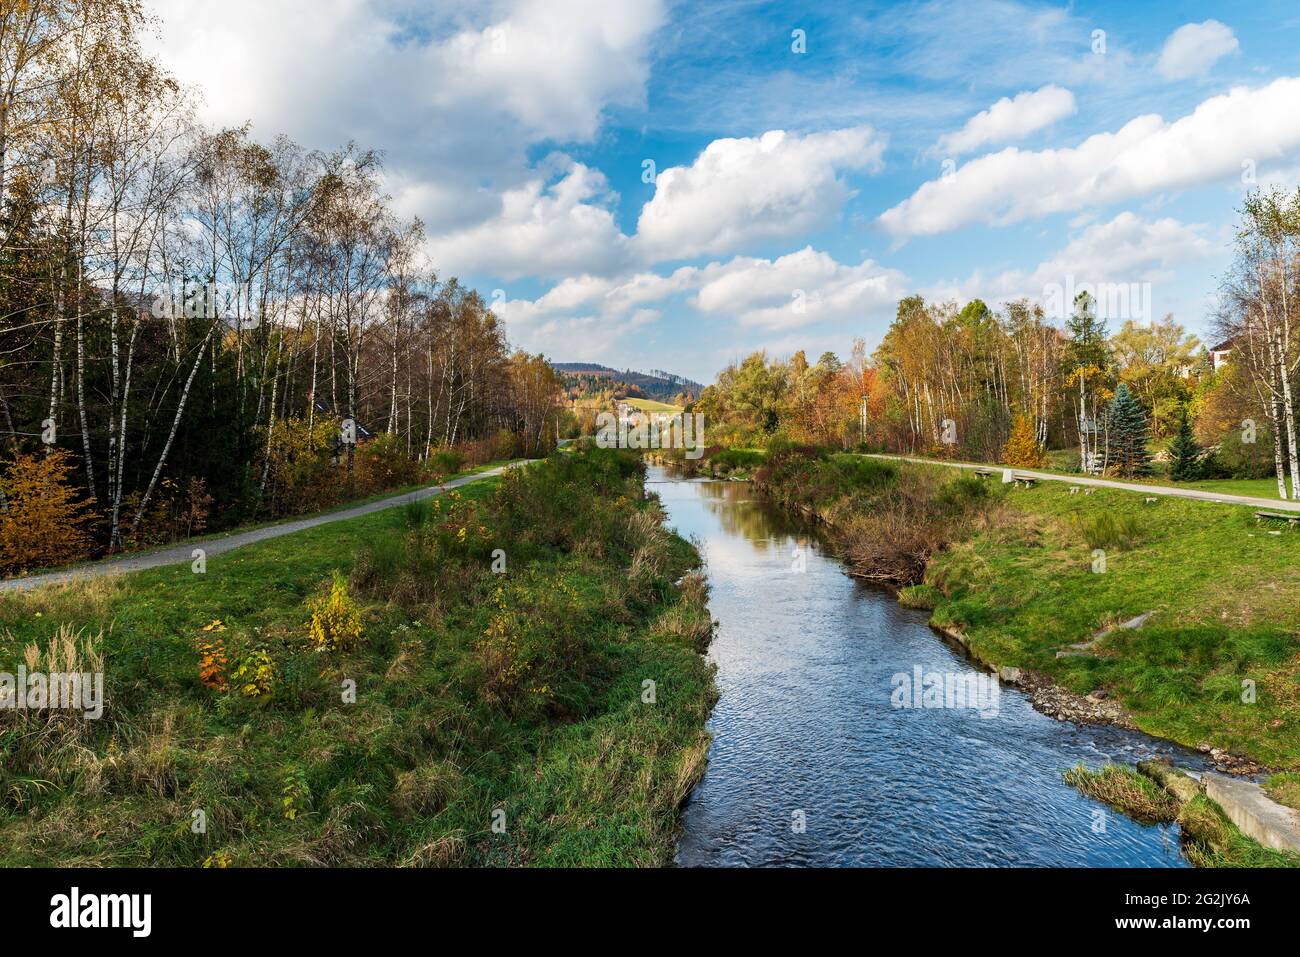 Paysage d'automne avec rivière, sentier et route étroite, arbres colorés et petites collines sur le fond près du village Brenna en Pologne Banque D'Images